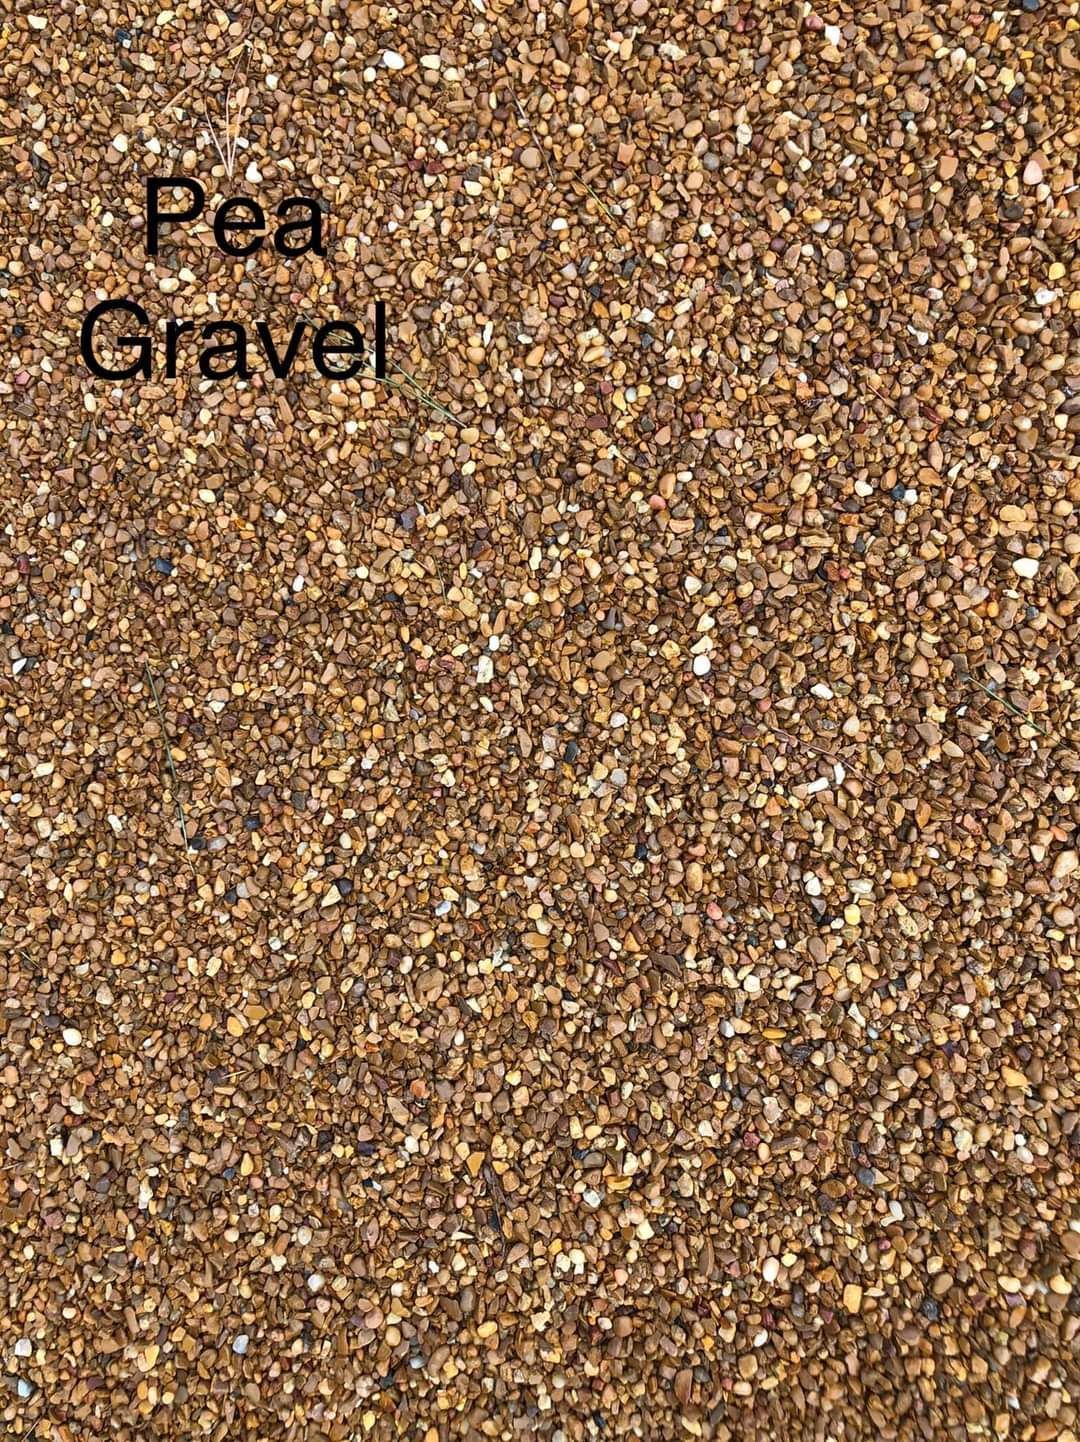 Pea Gravel